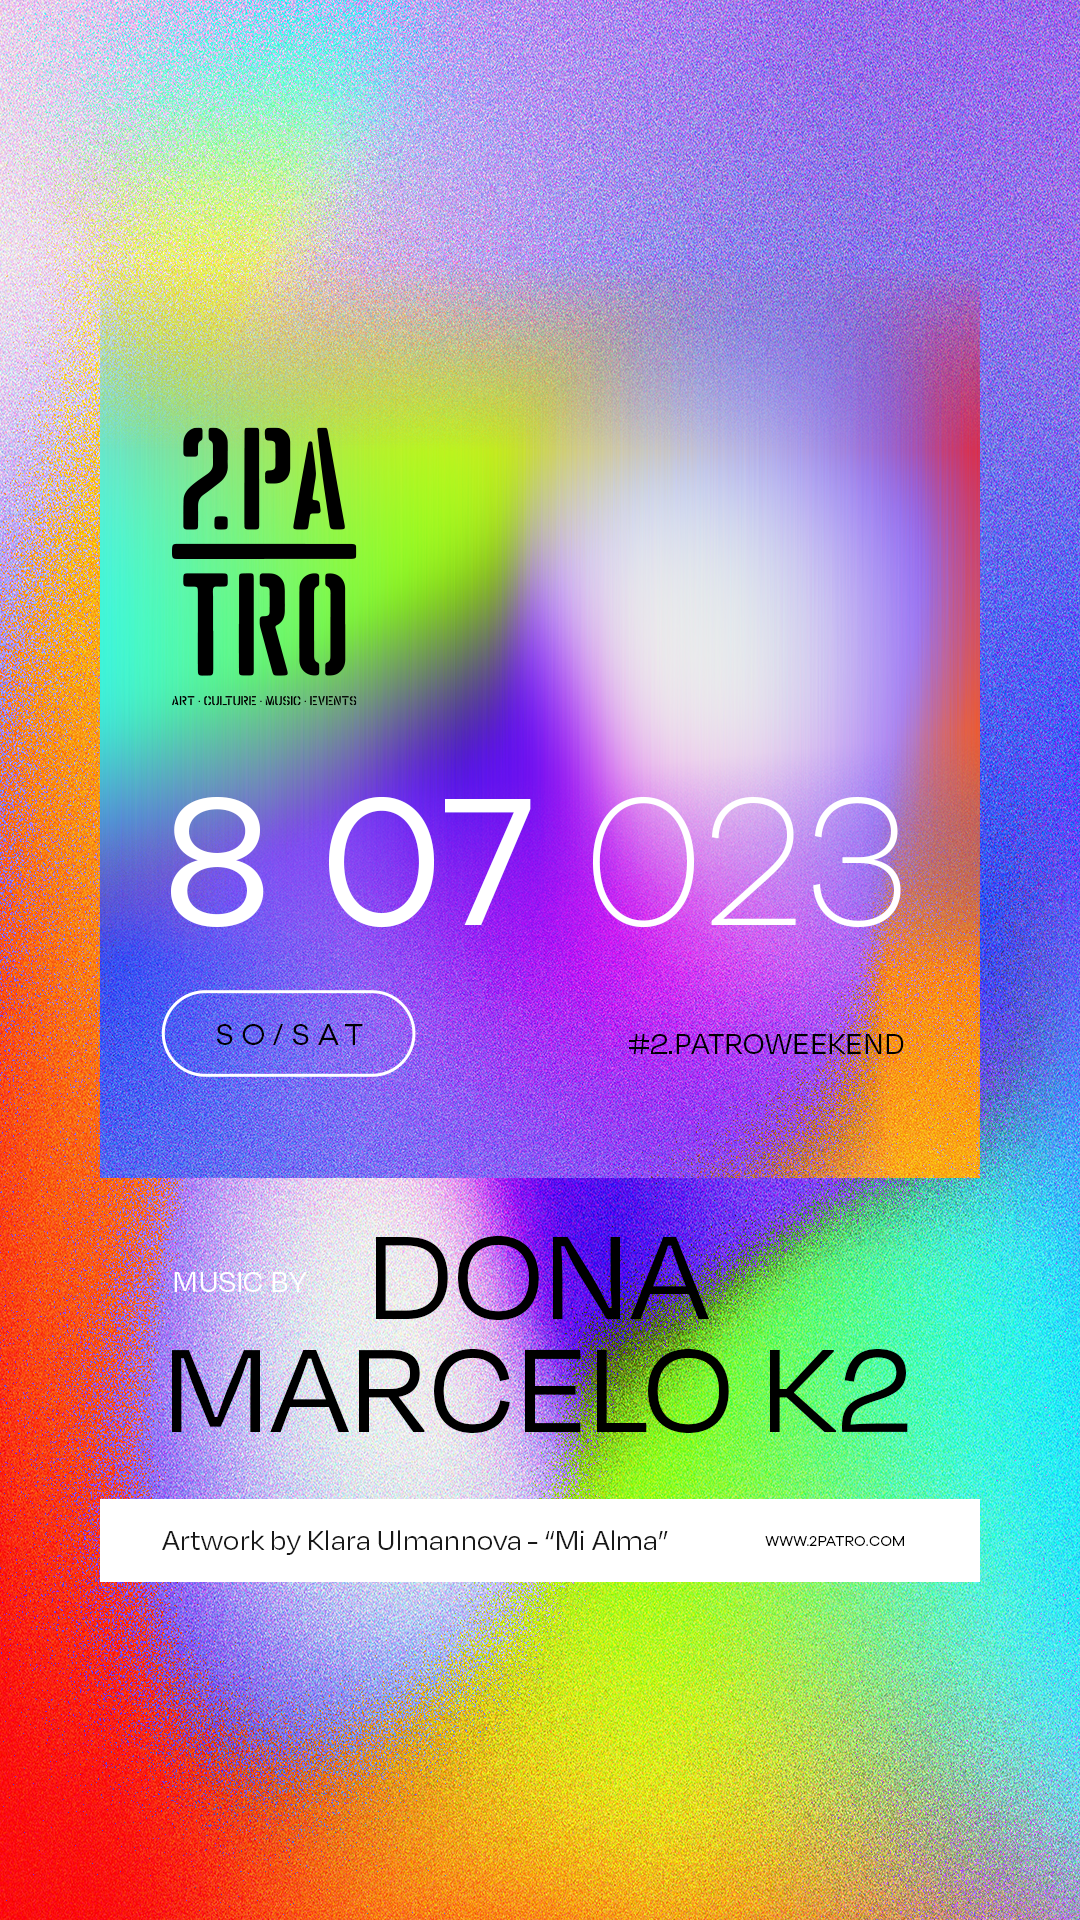 2. Patro: Dona & Marcelo K2 - Página frontal